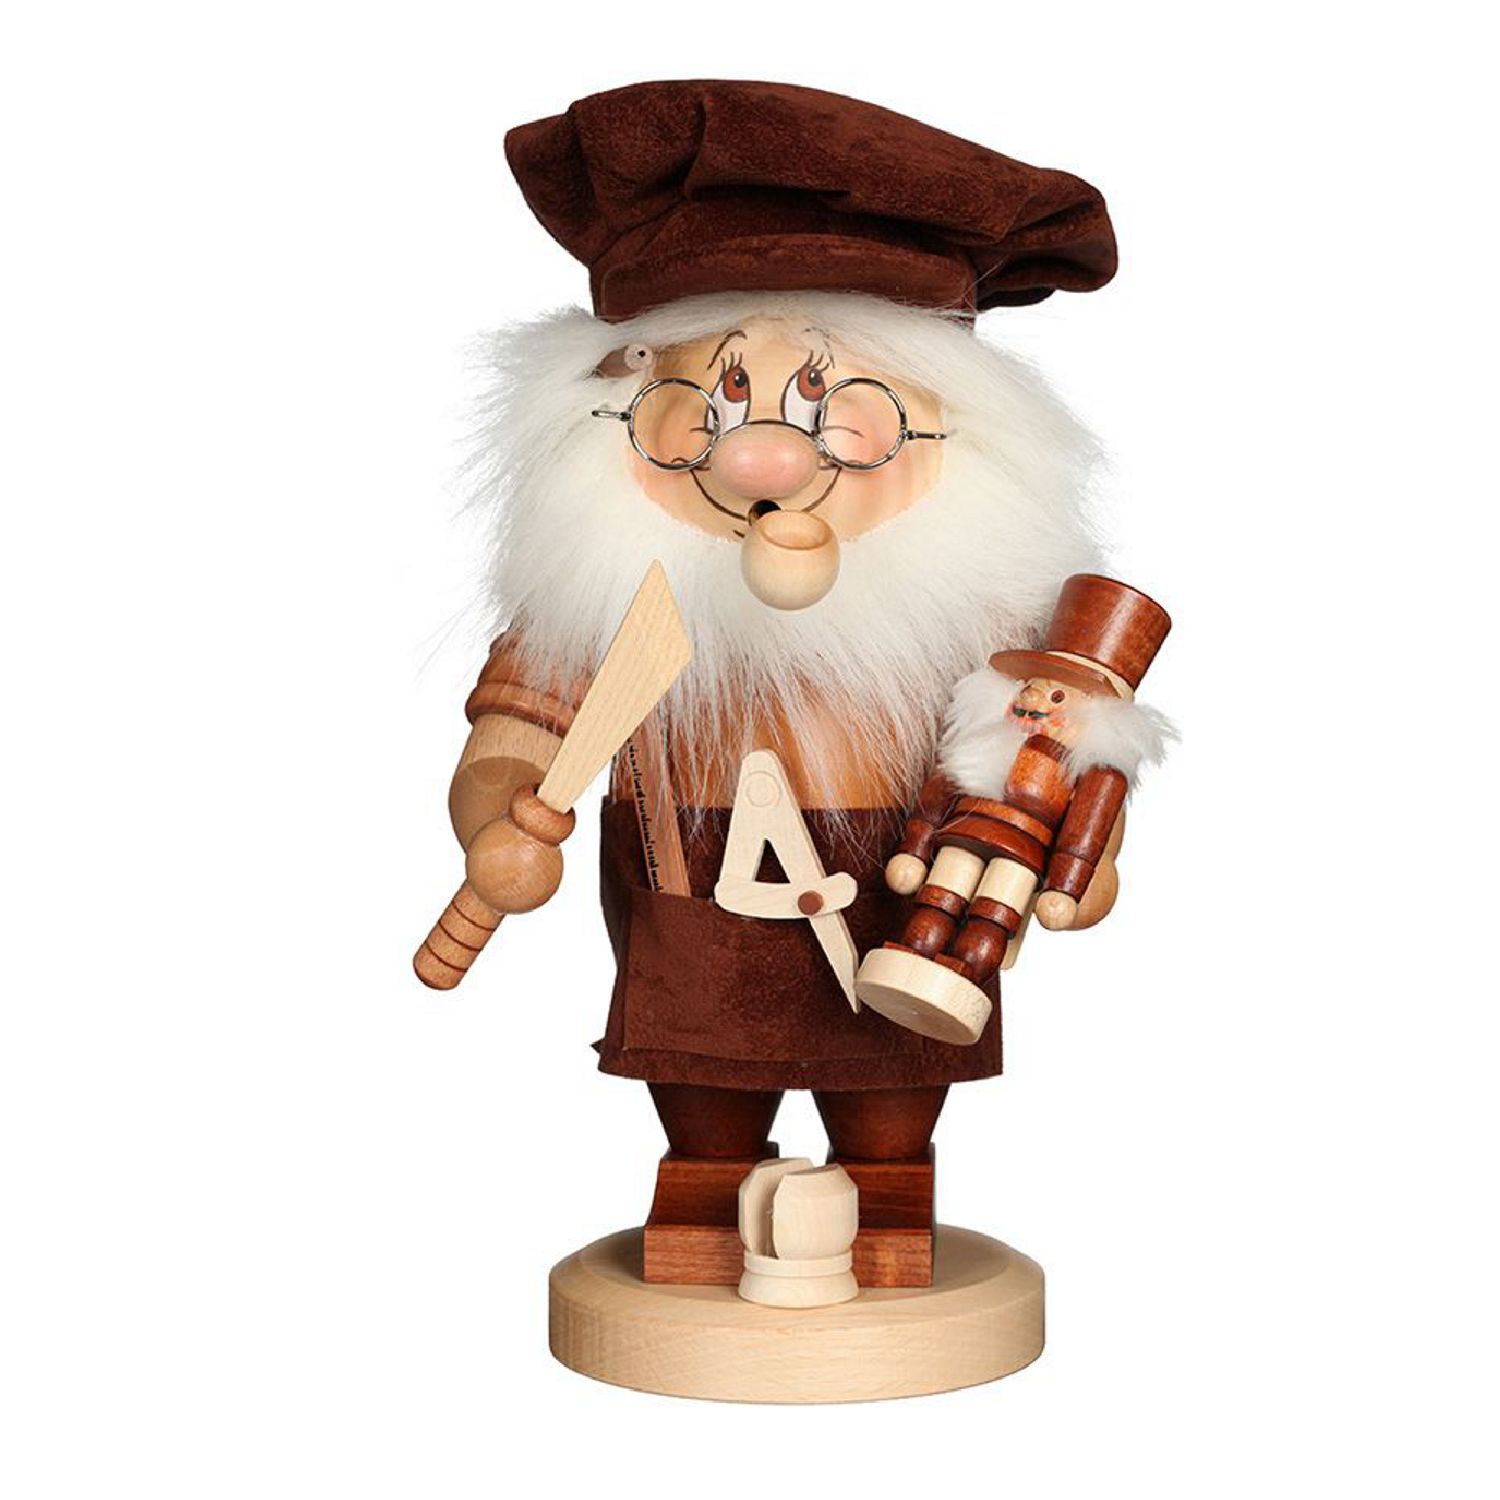 Incense figure gnome nutcracker maker